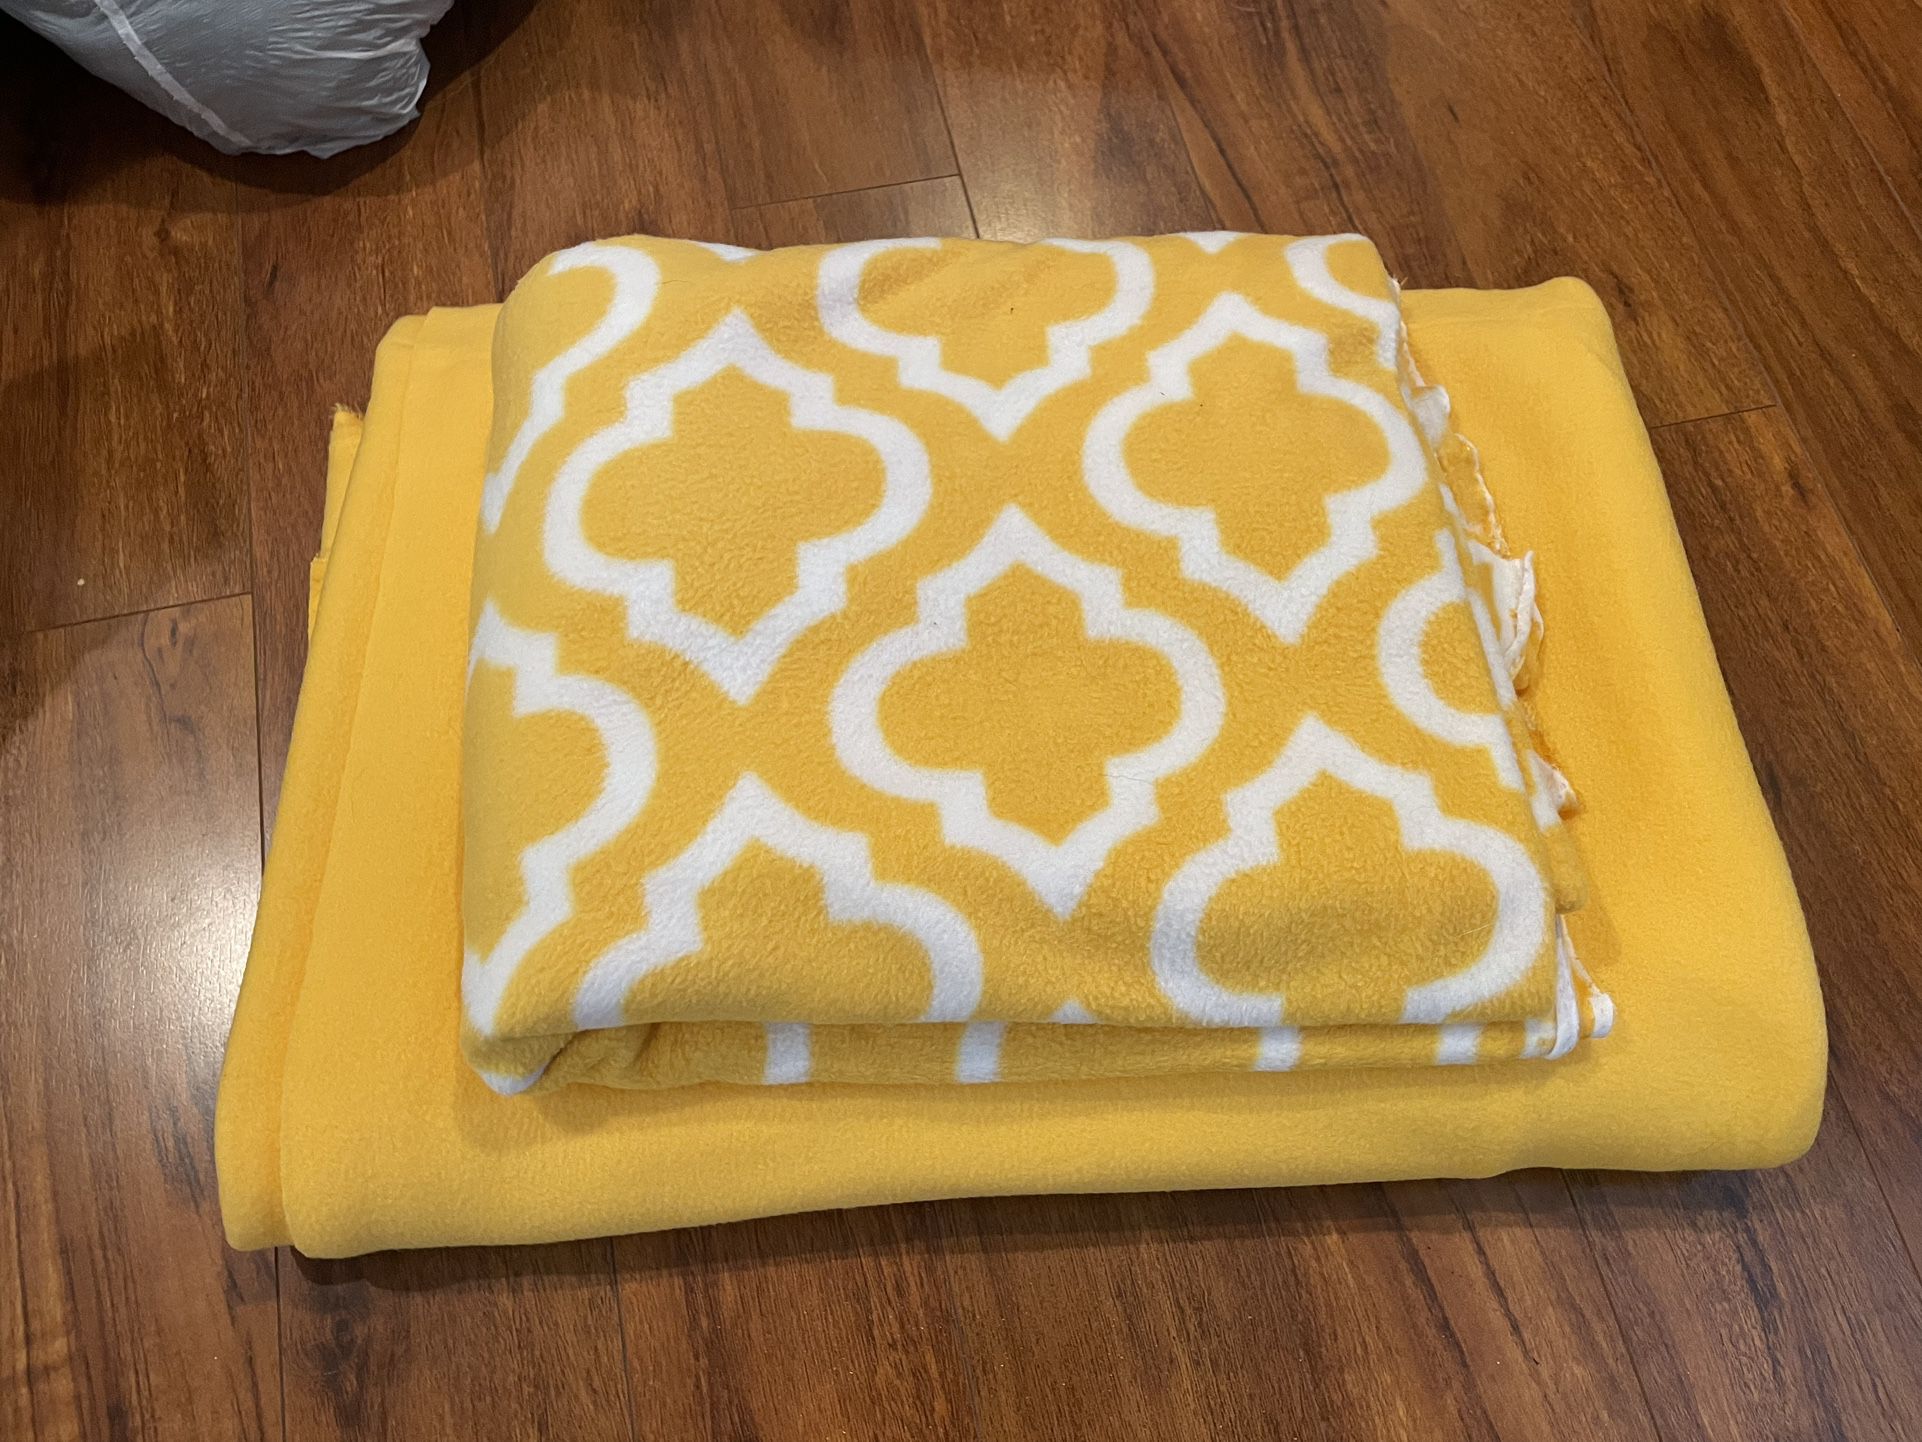 Yellow Fleece Fabric